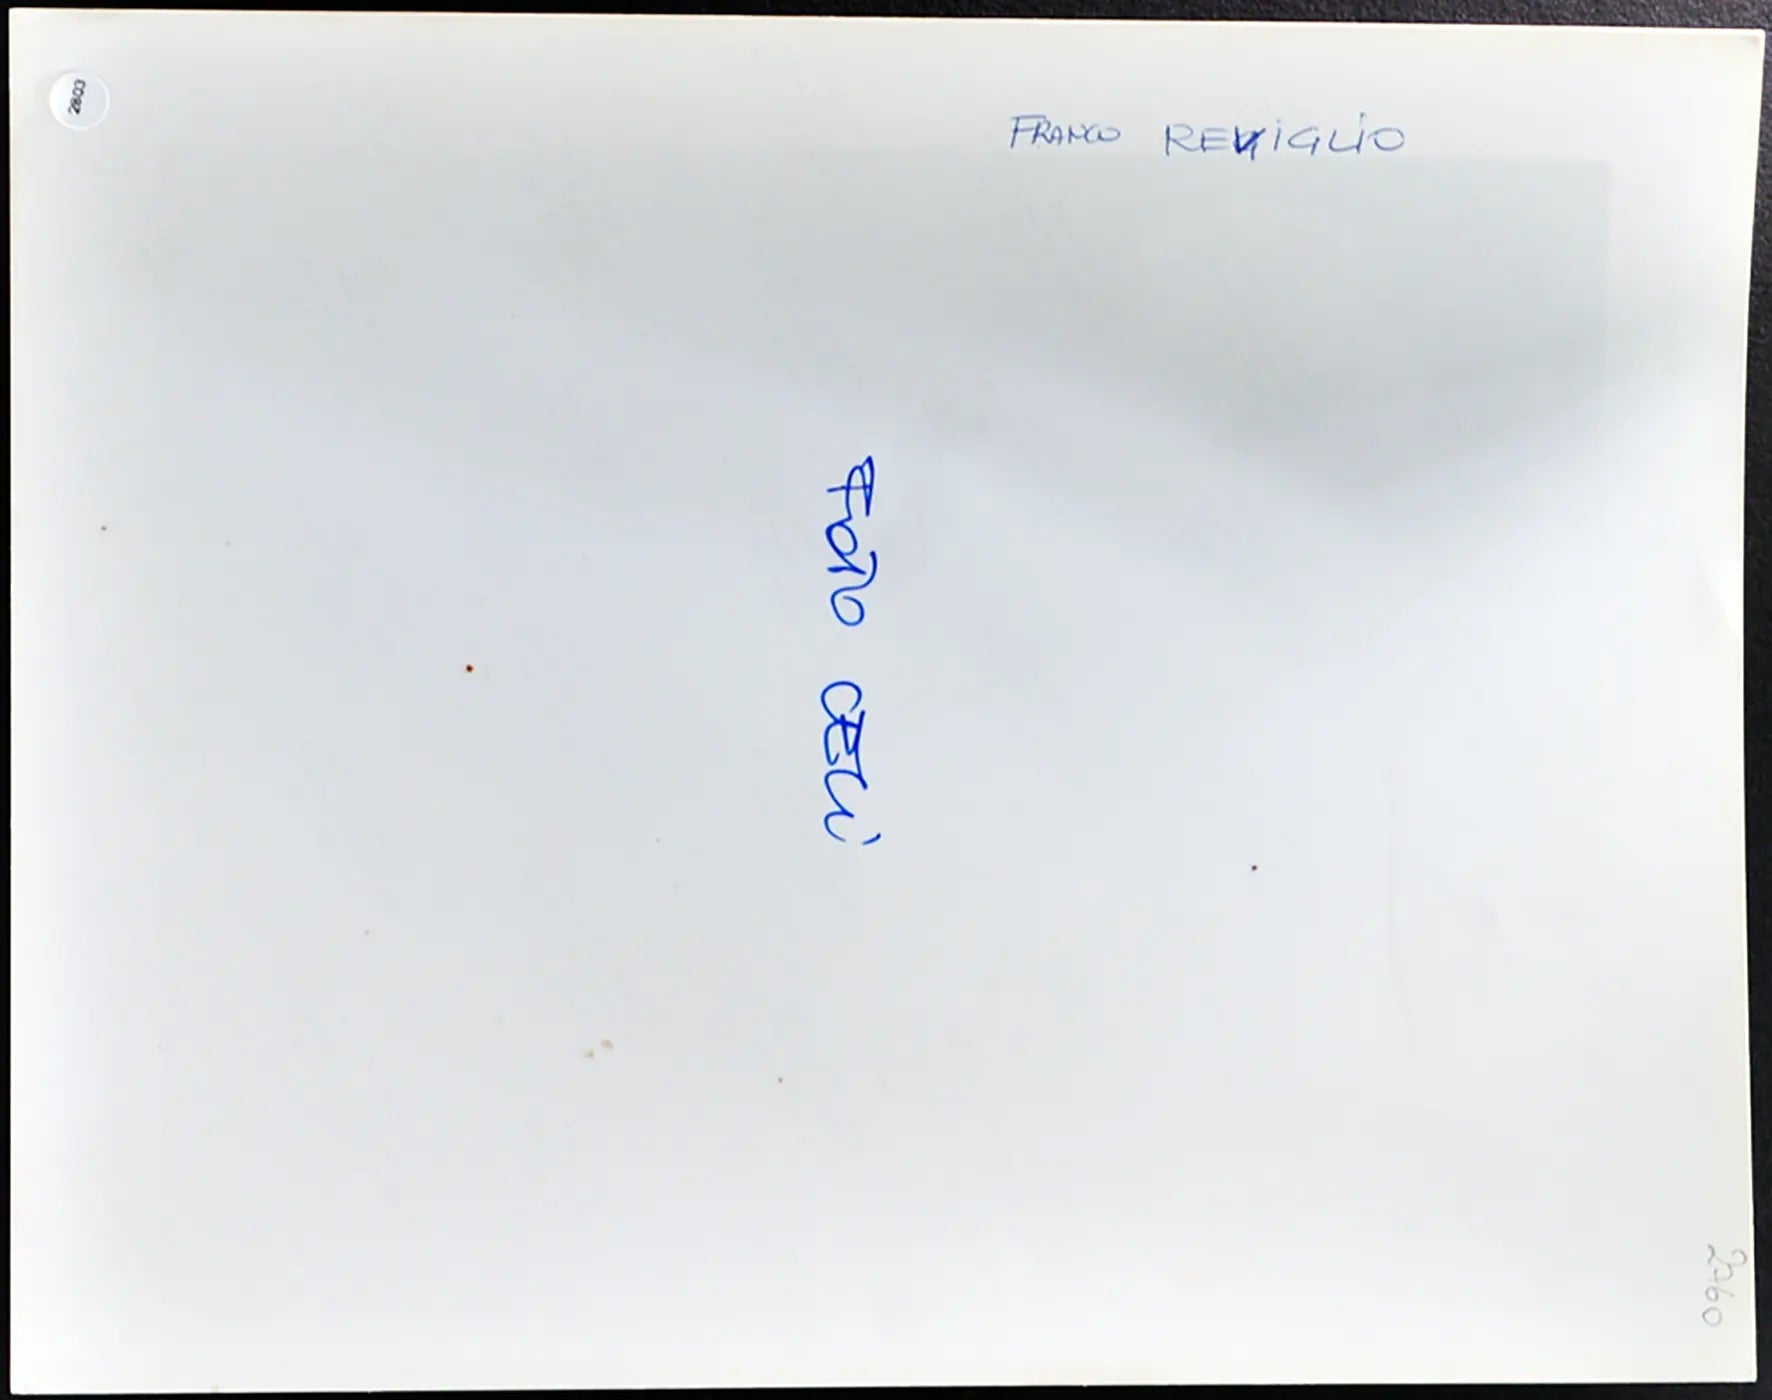 Reviglio anni 90 Ft 2803 - Stampa 24x30 cm - Farabola Stampa ai sali d'argento